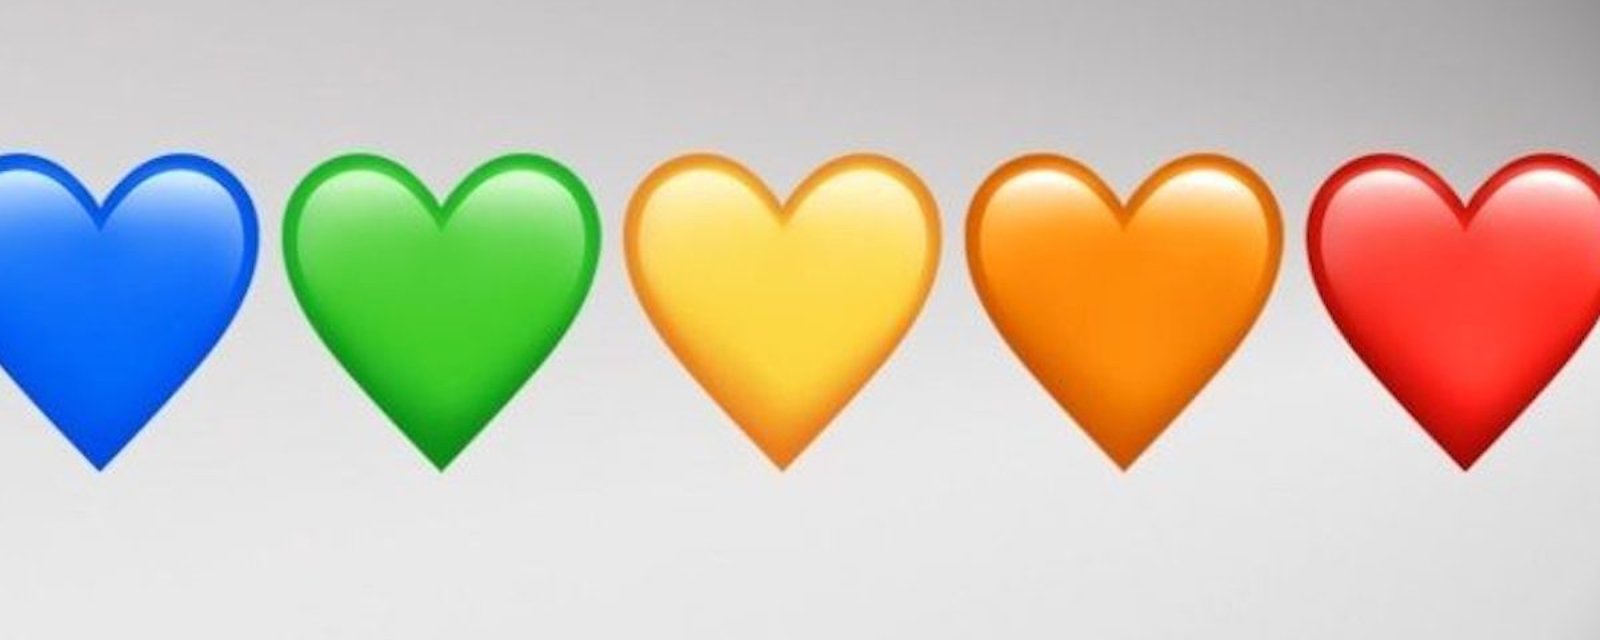 Le saviez-vous? Les couleurs des emojis coeurs ont chacune leur signification!